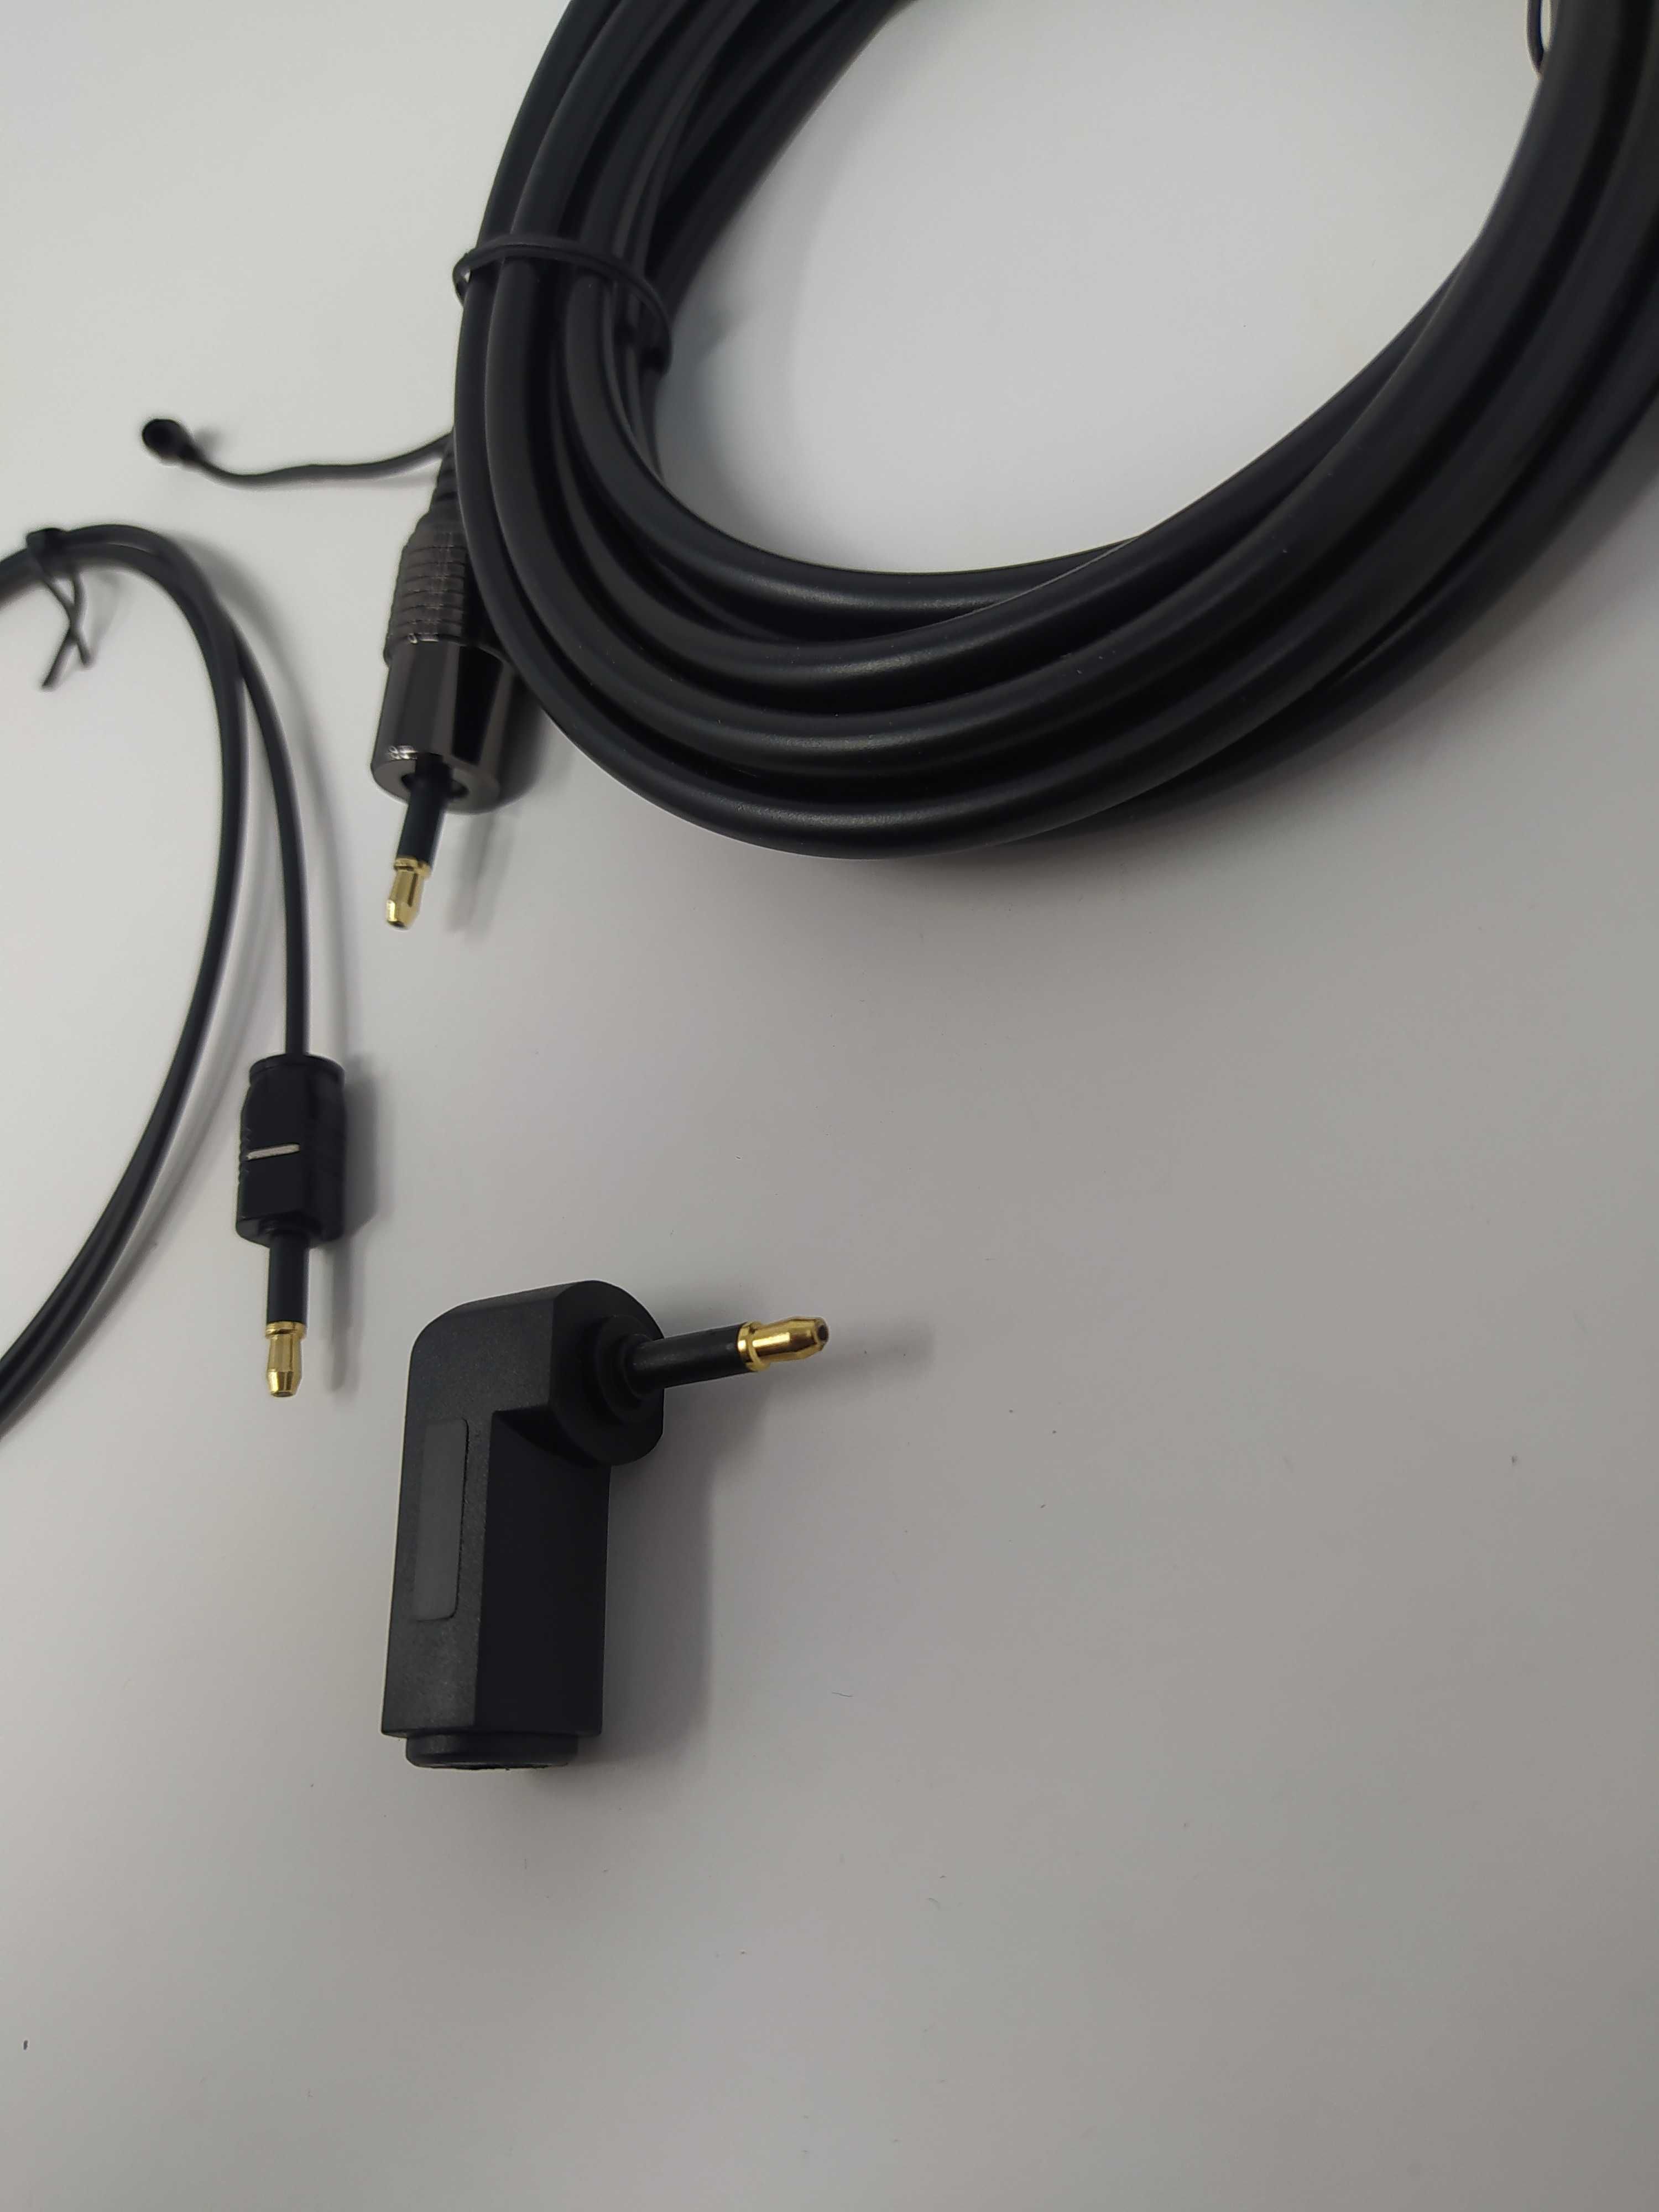 Оптический кабель Toslink - Toslink разной длины и качества+есть HDMI